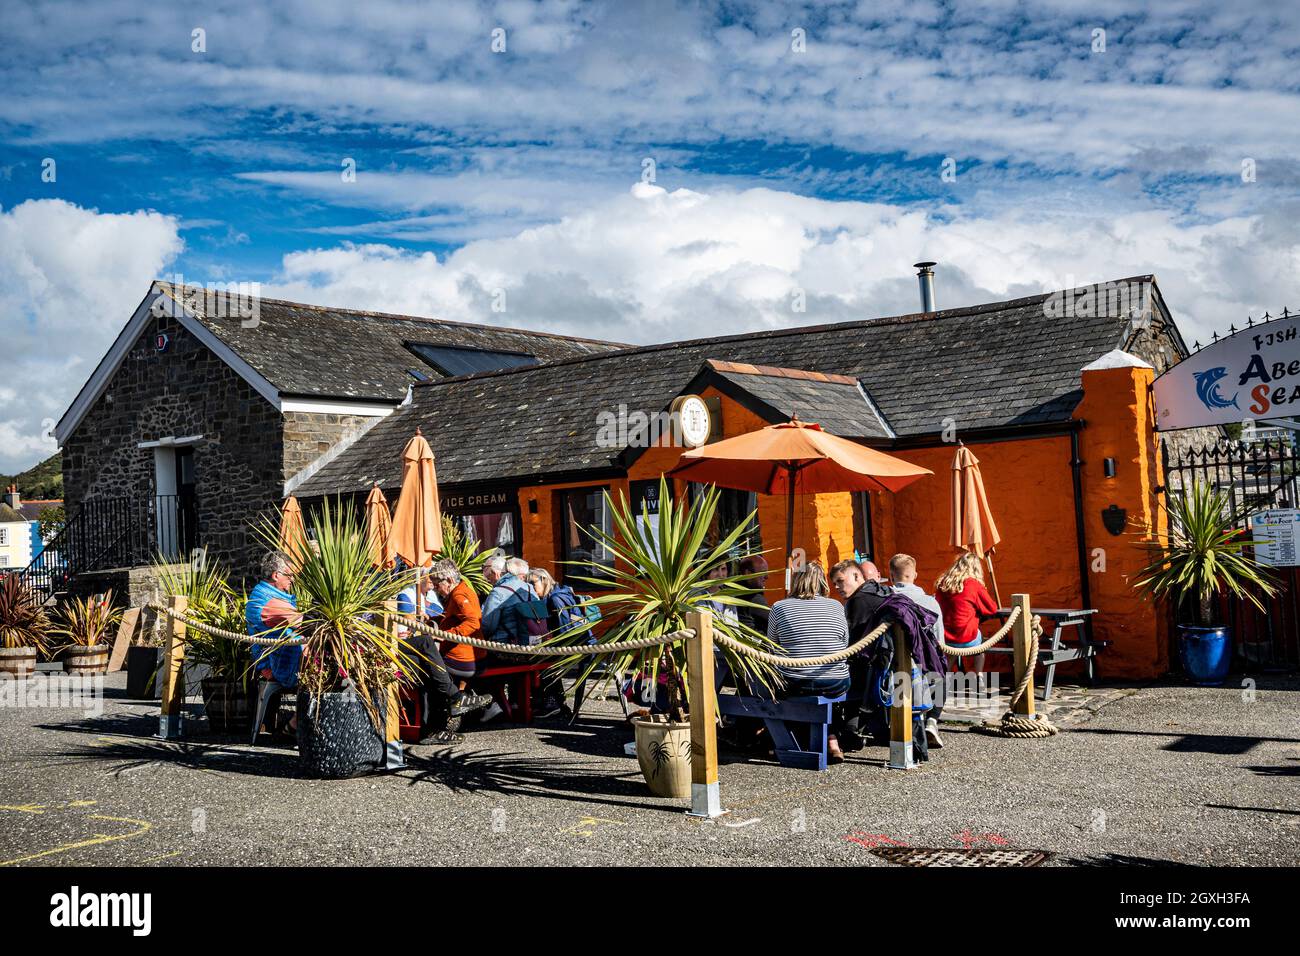 Cafe society,outside cafe enjoying  the good weather in Aberaeron Wales UK Al fresco Stock Photo